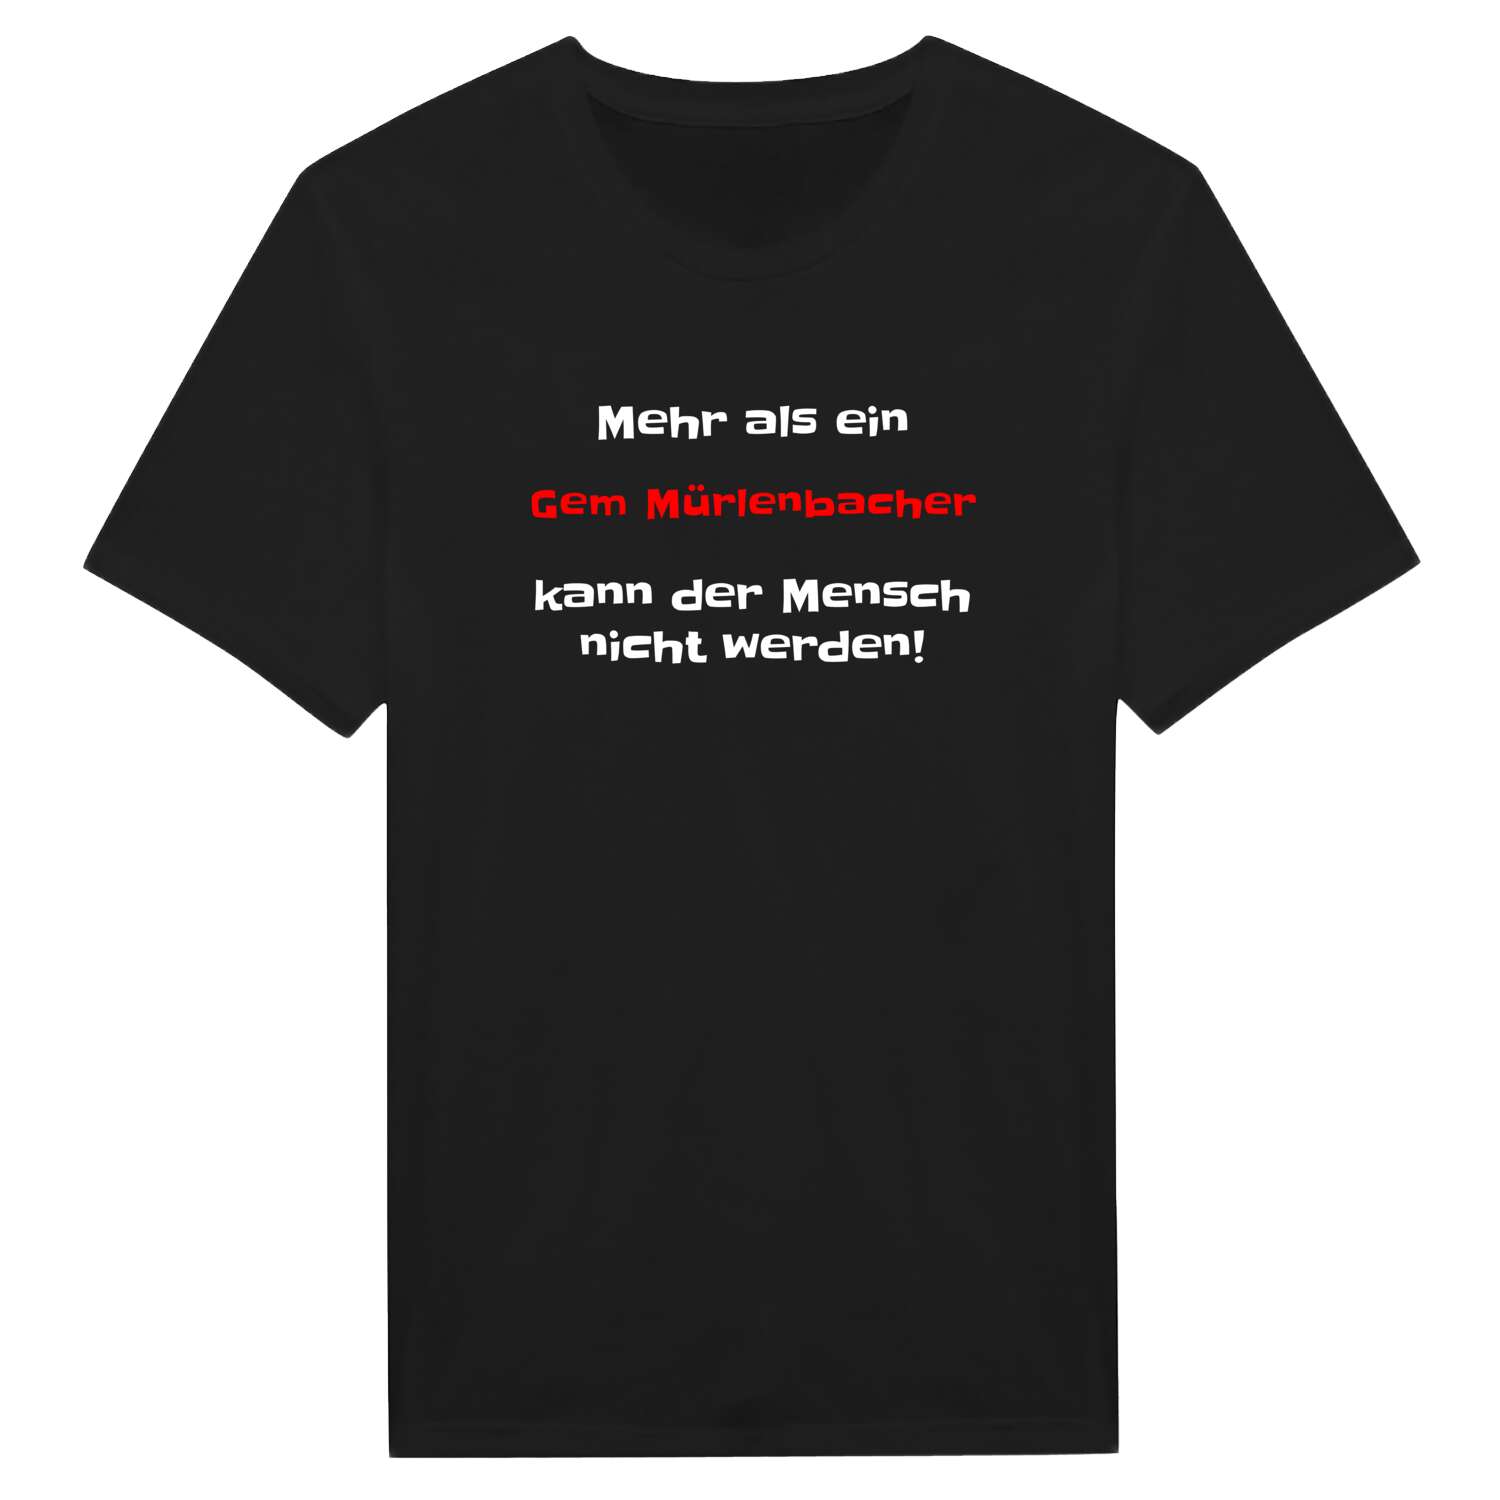 Gem Mürlenbach T-Shirt »Mehr als ein«